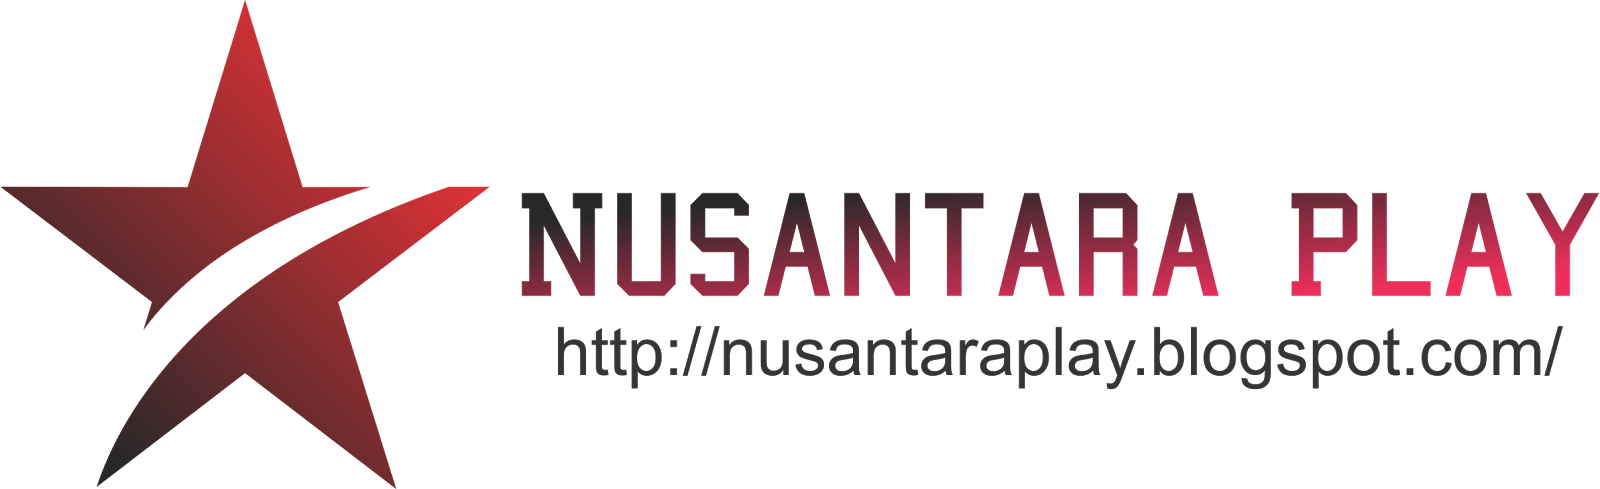 Nusantara Play